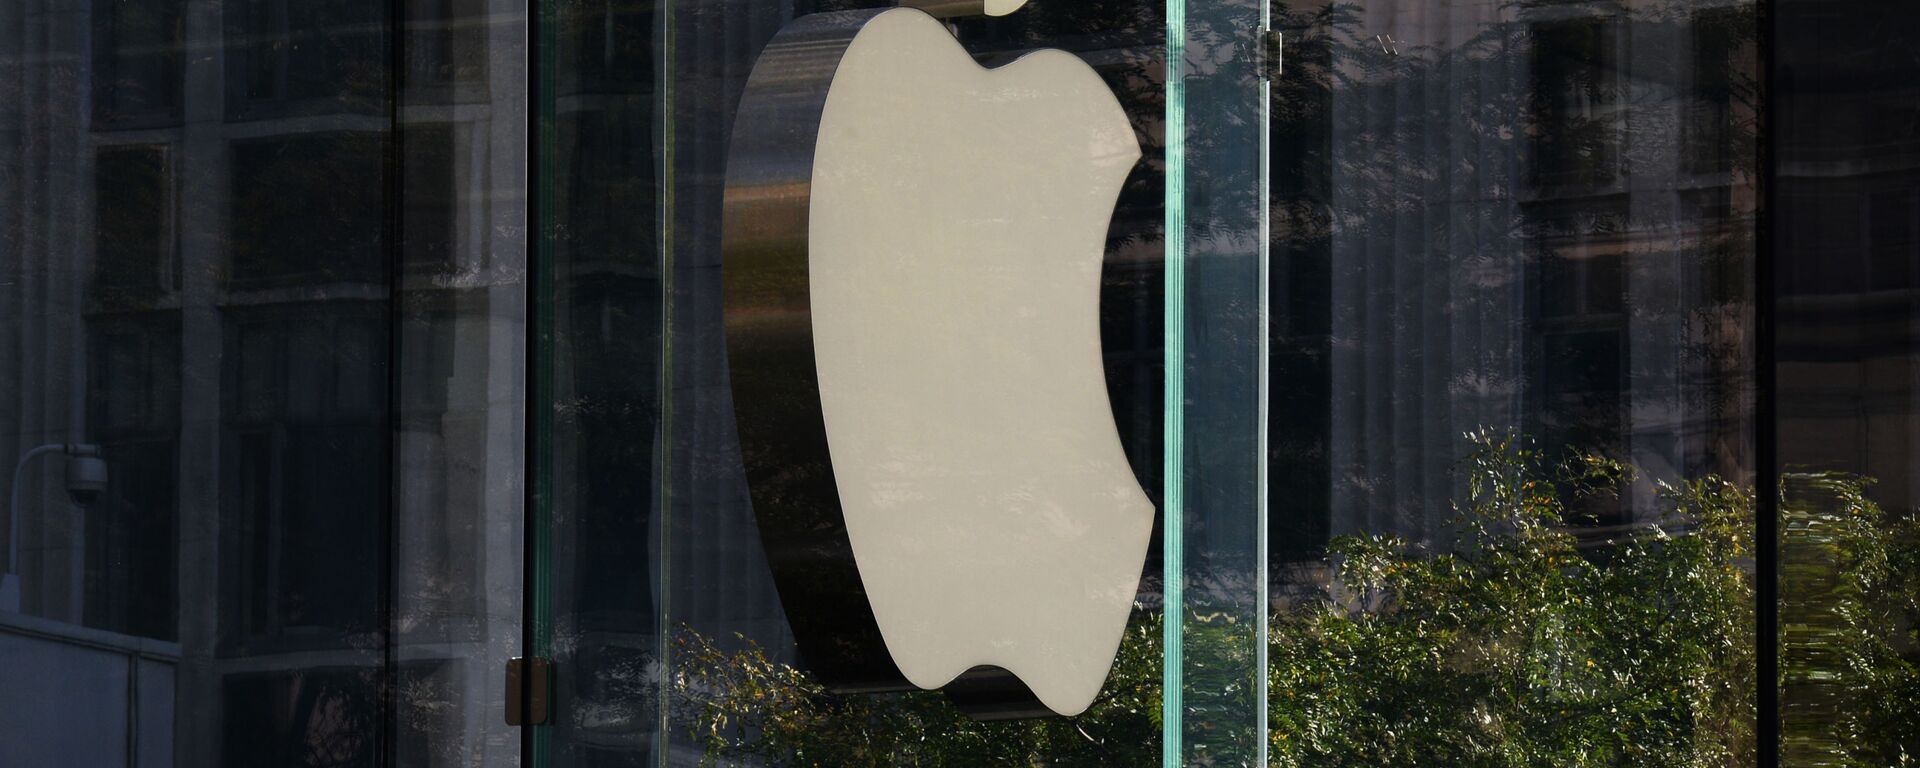 Логотип компании Apple на стене фирменного магазине на 5-й авеню в Нью-Йорке - Sputnik Абхазия, 1920, 09.03.2022